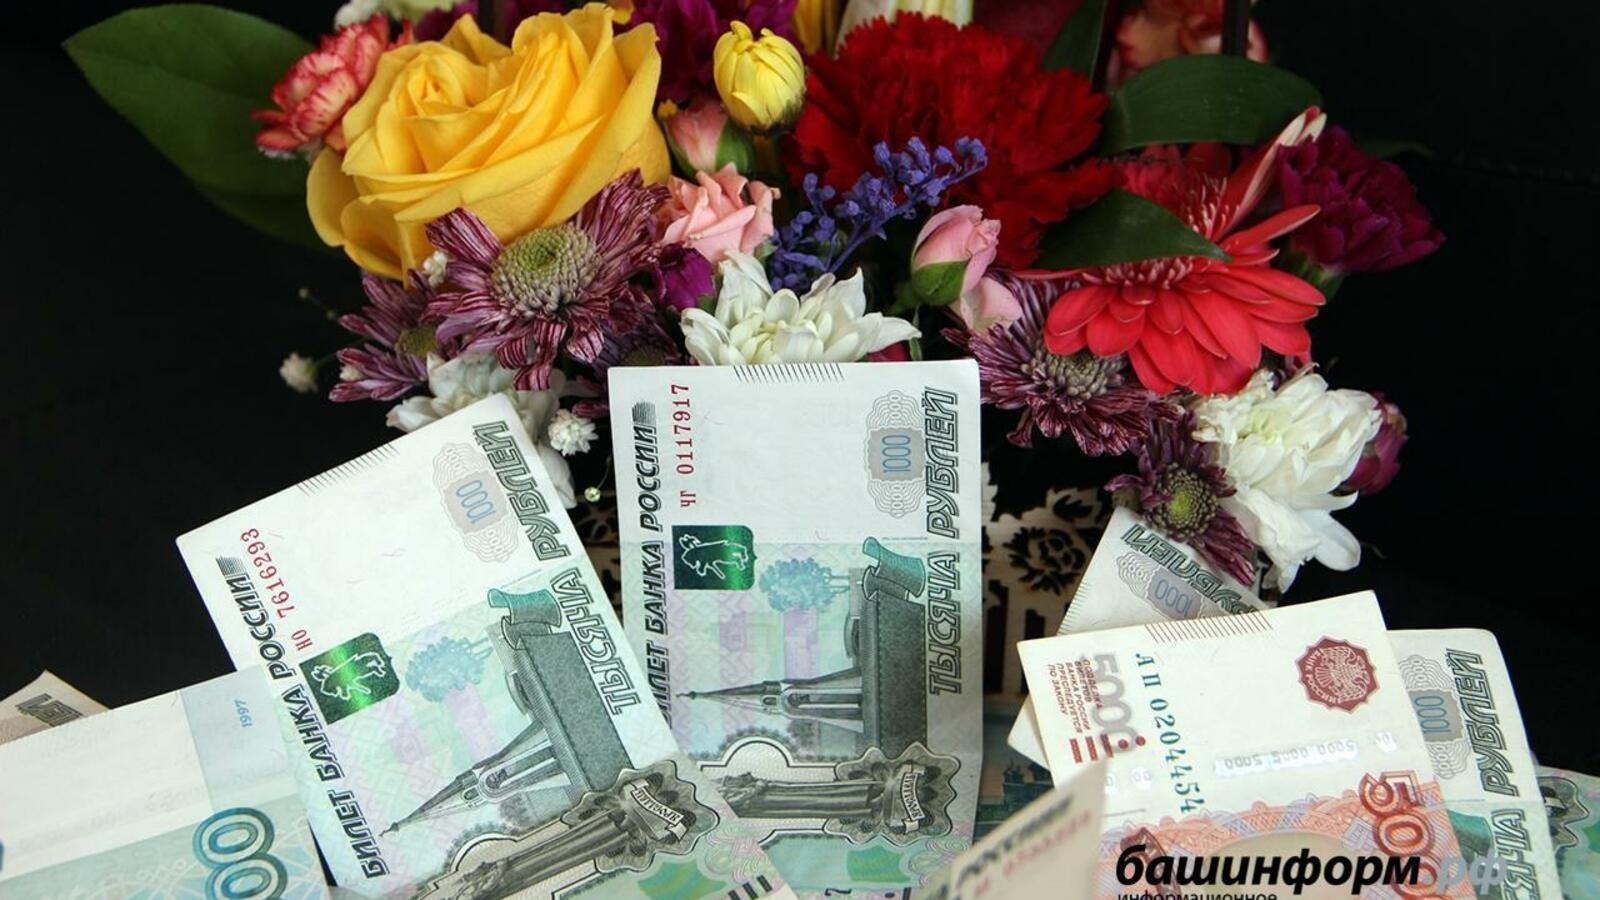 19 творческих проектов Башкирии поддержаны президентским фондом культурных инициатив 16 млн рублей